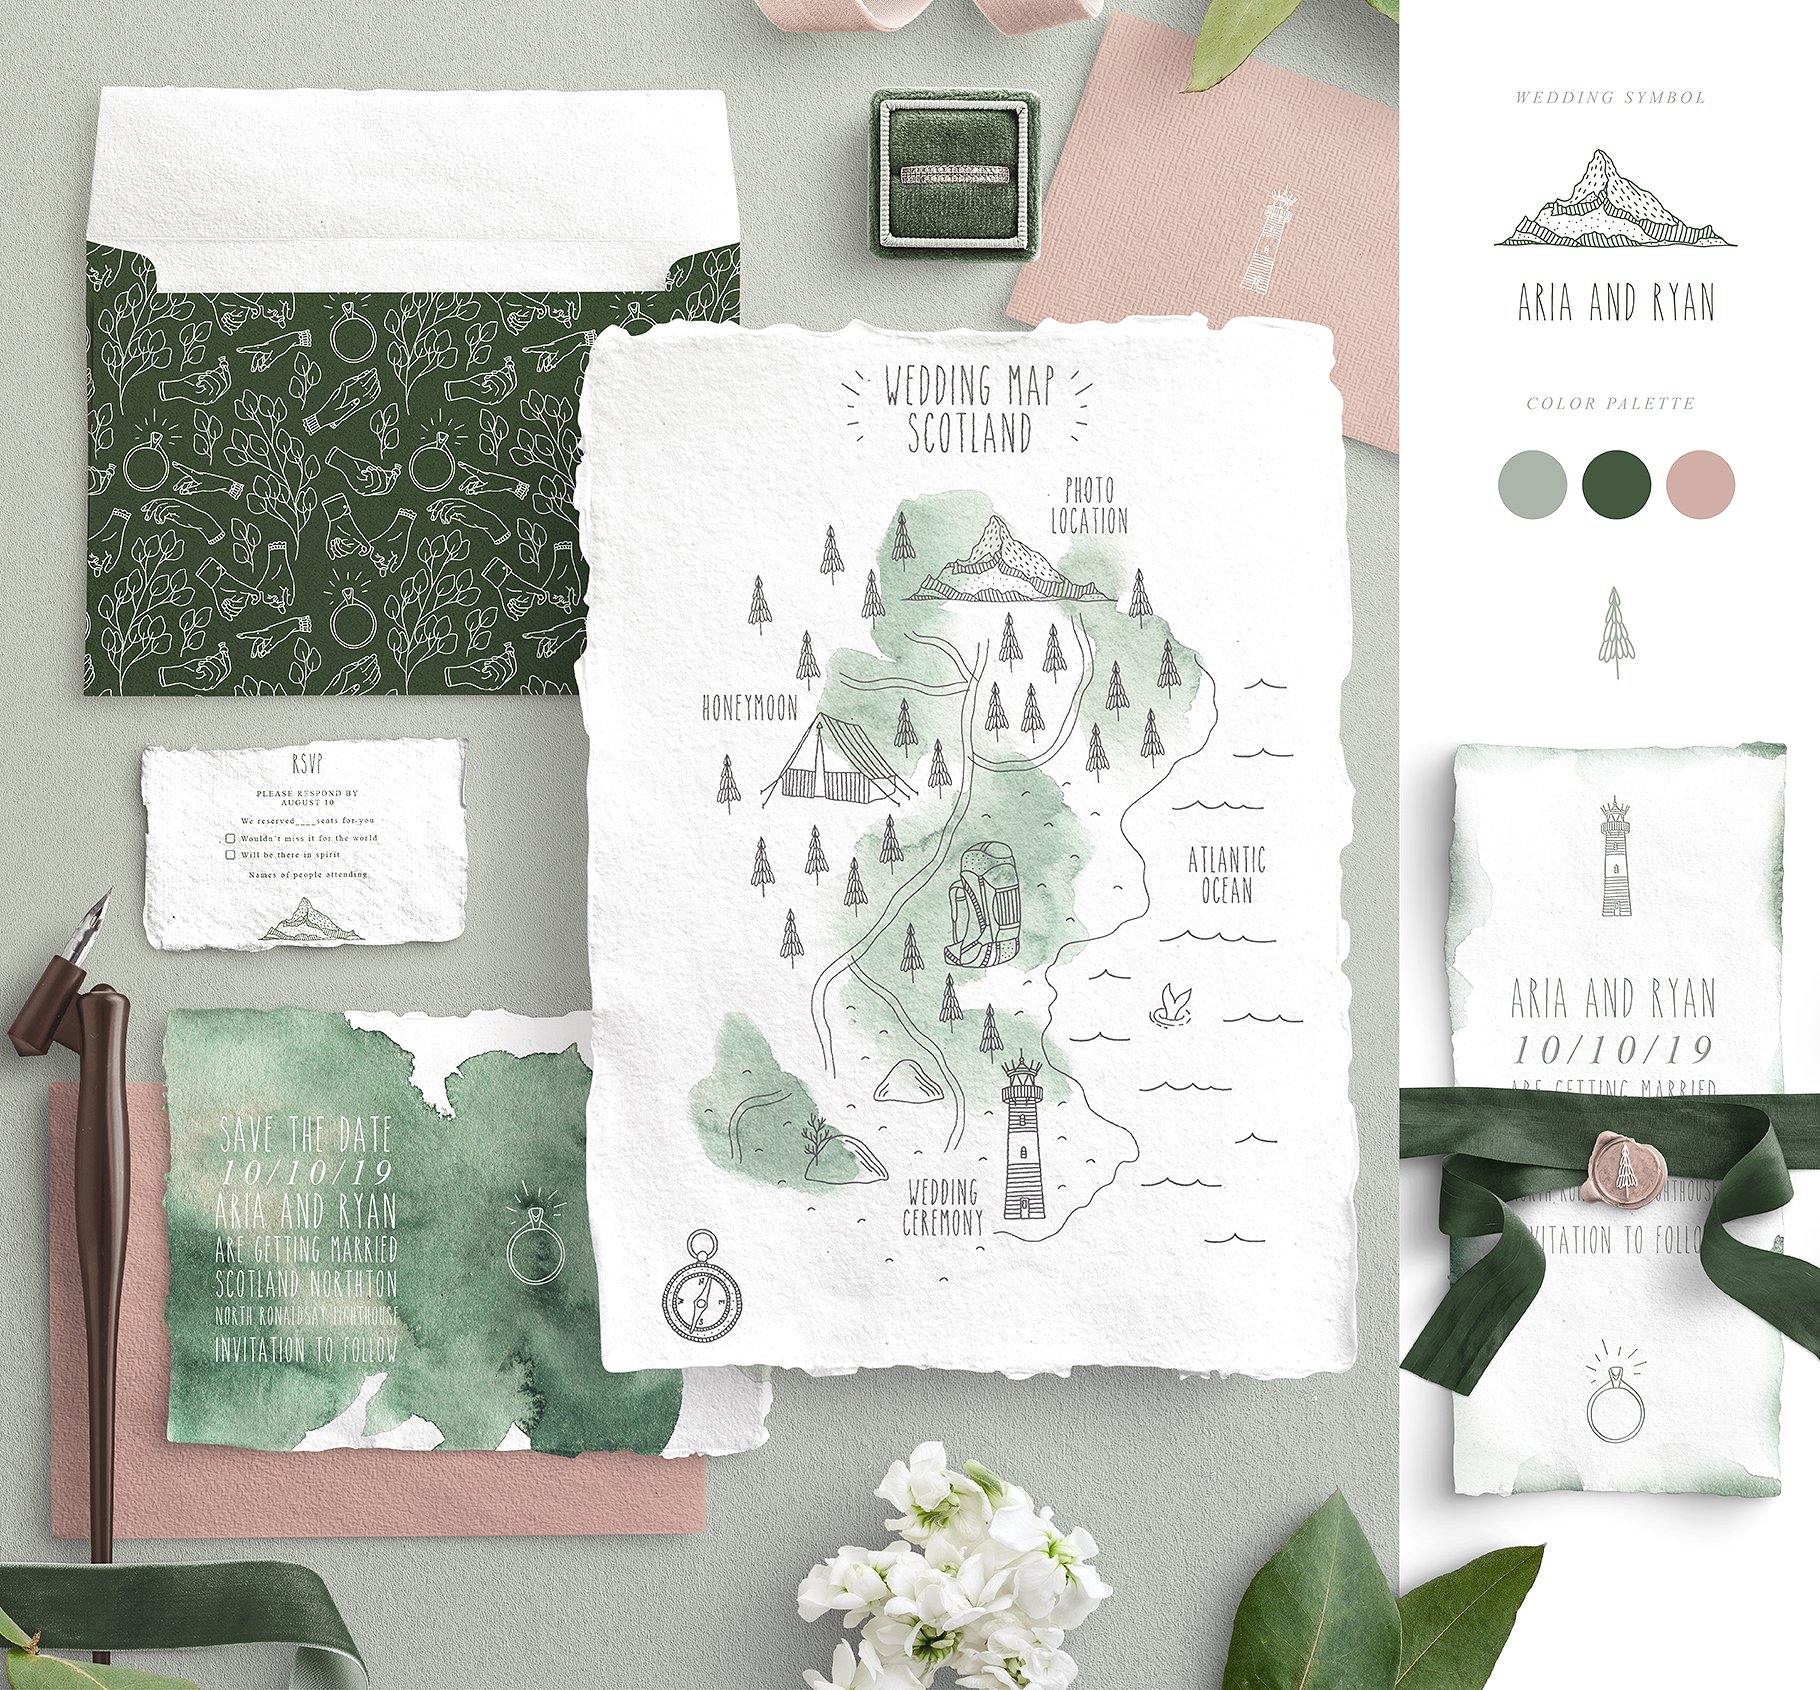 创意文艺风格婚礼邀请函地图设计素材包 Wedding Map Creator Collection插图(4)